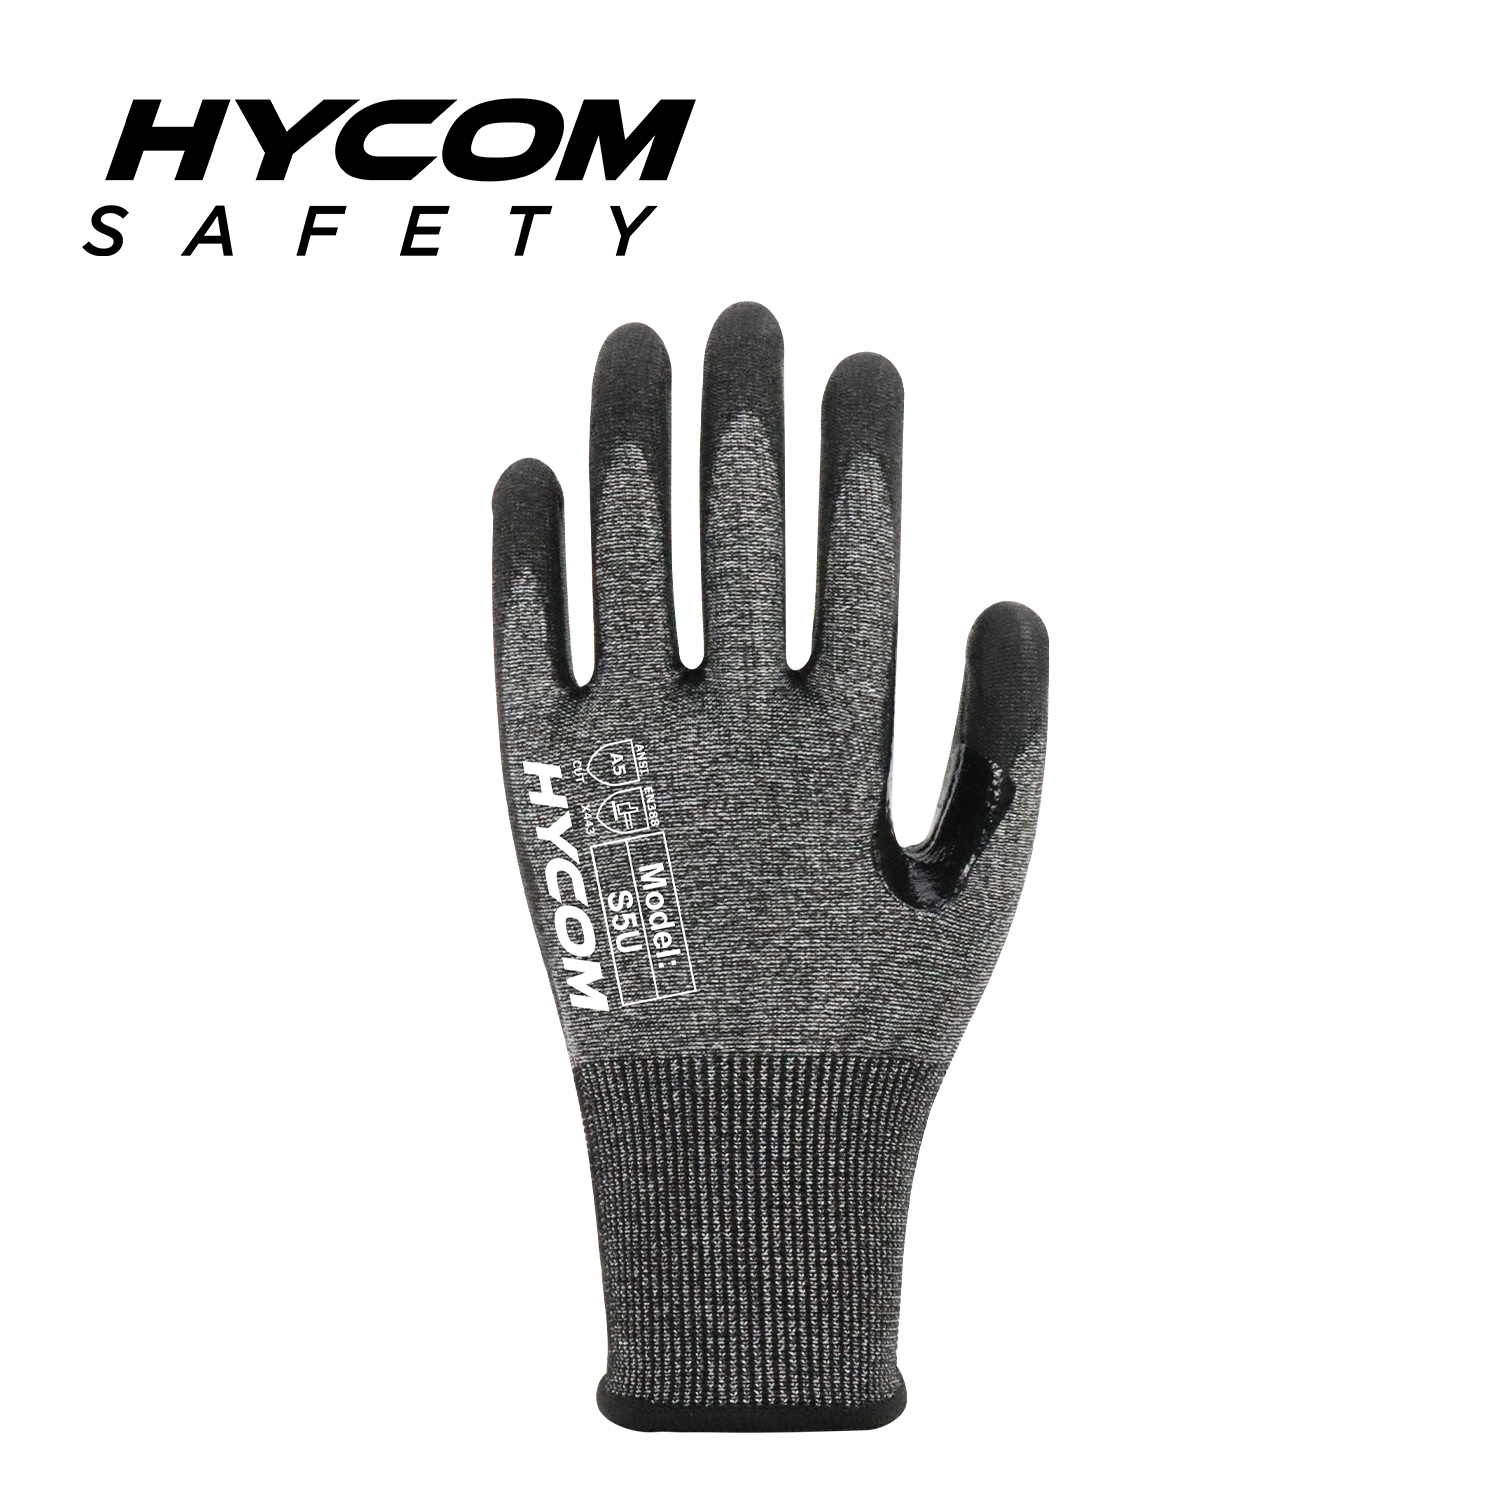 HYCOM 18G ANSI 5 Schnittfester Handschuh mit Nitril-Schaumstoffbeschichtung auf der Handfläche PSA-Handschuhe